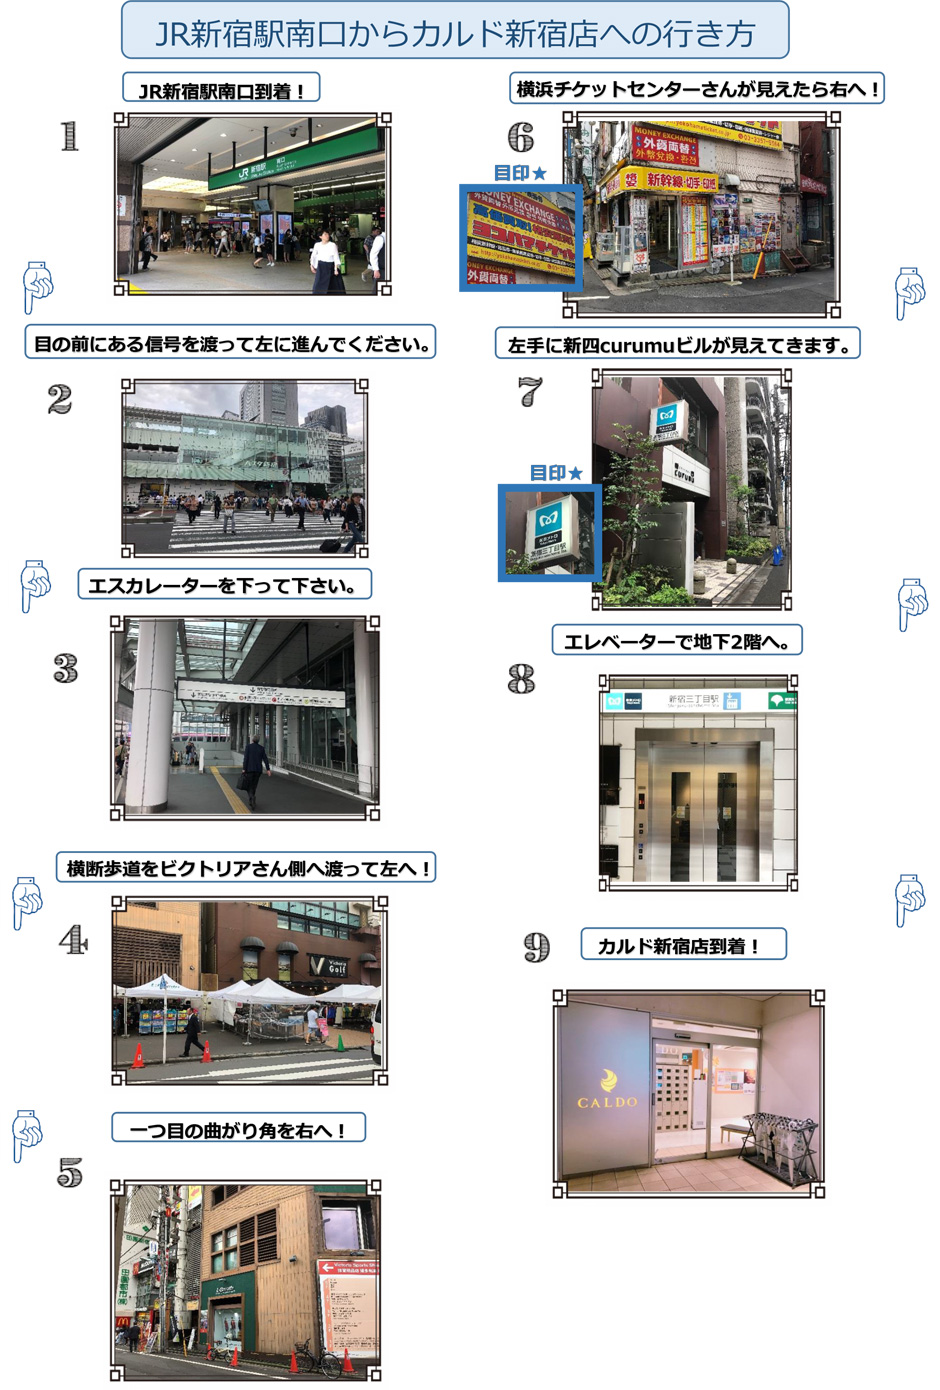 JR新宿駅南口からカルド新宿店への行き方：JR新宿駅南口到着！→目の前にある信号を渡って左に進んでください→エスカレーターを下って下さい→横断歩道をビクトリアさん側へ渡って左へ！→一つ目の曲がり角を右へ！→横浜チケットセンターさんが見えたら右へ！→左手に新四curumuビルが見えてきます→エレベーターで地下2階へ→カルド新宿店到着！